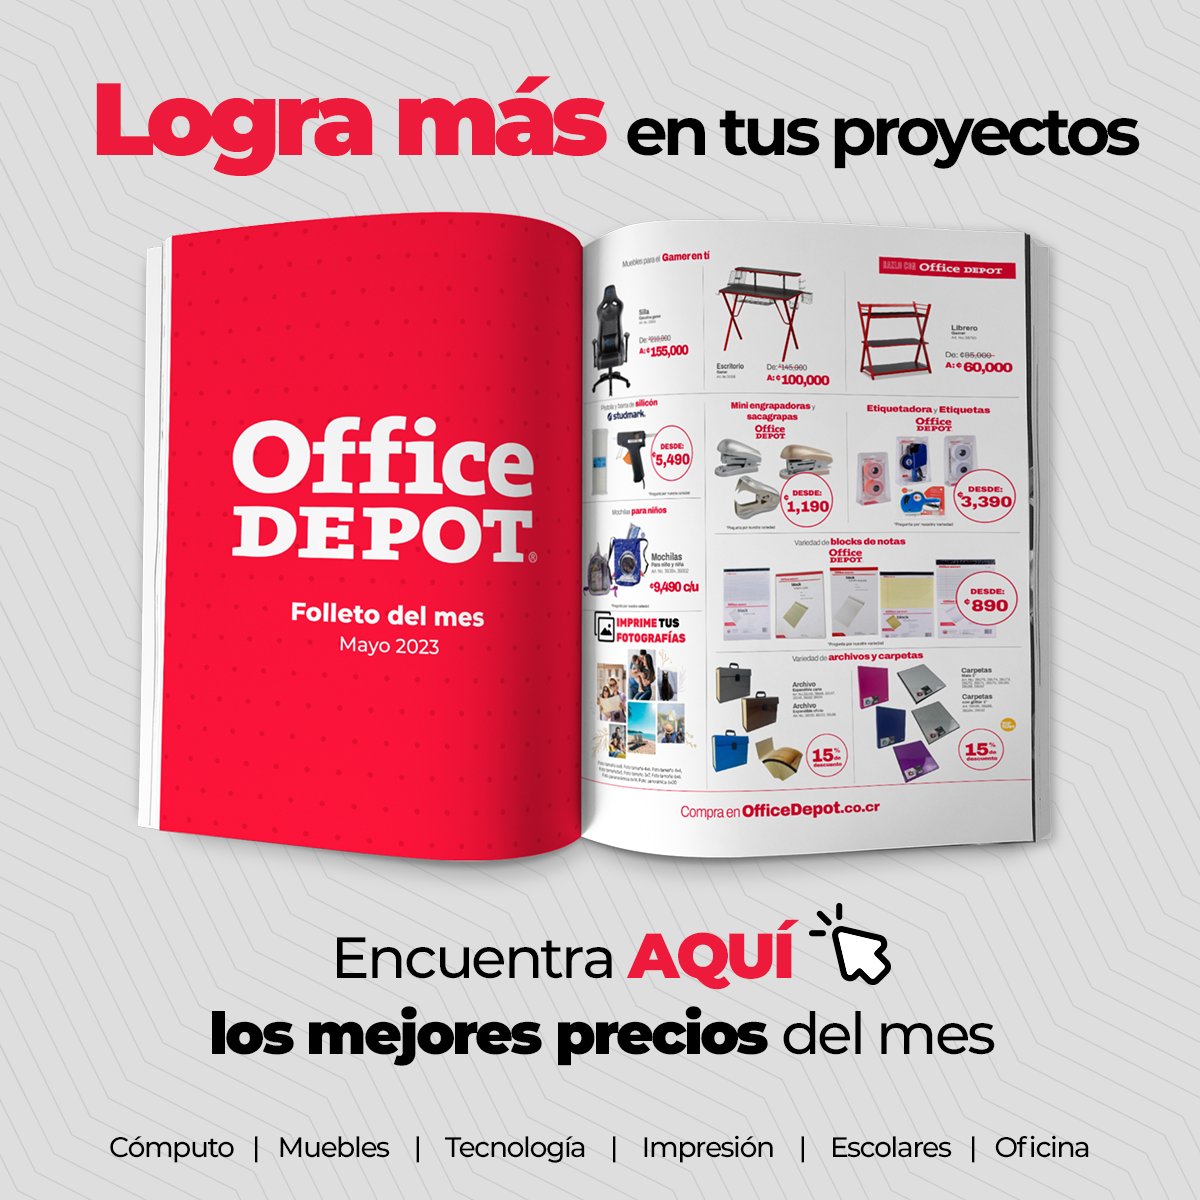 Office Depot Costa Rica (@OfficeDepotCR) / Twitter